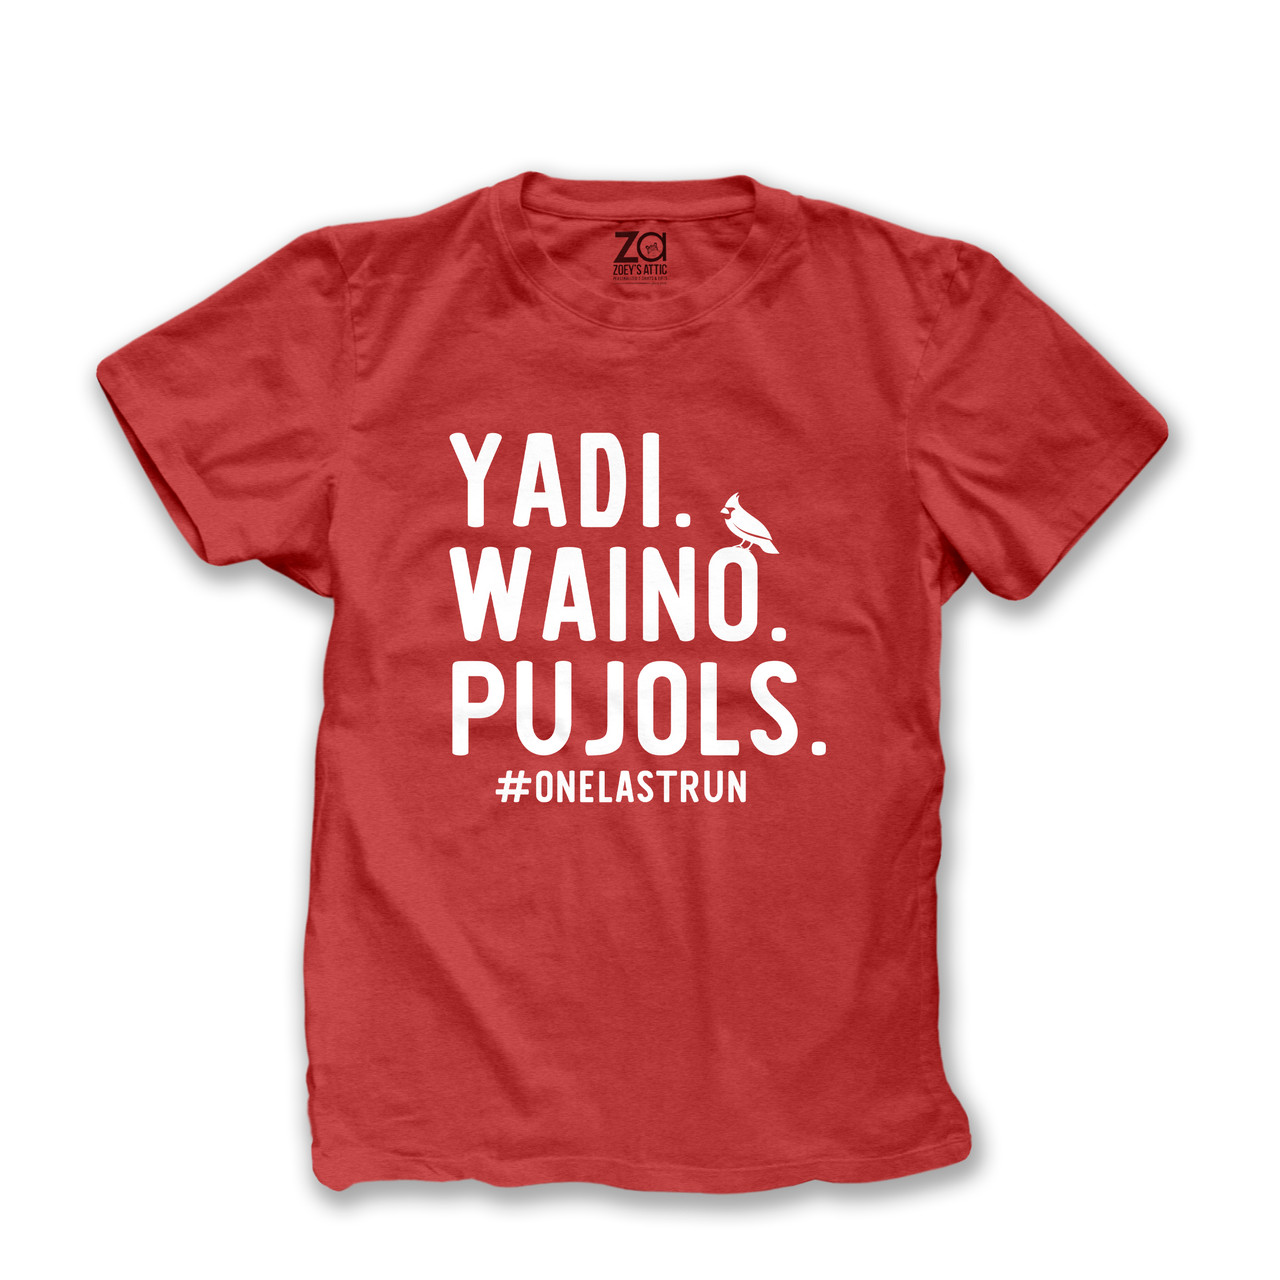 cardinal baseball shirt, best players yadi waino pujols #onelastrun dark tee